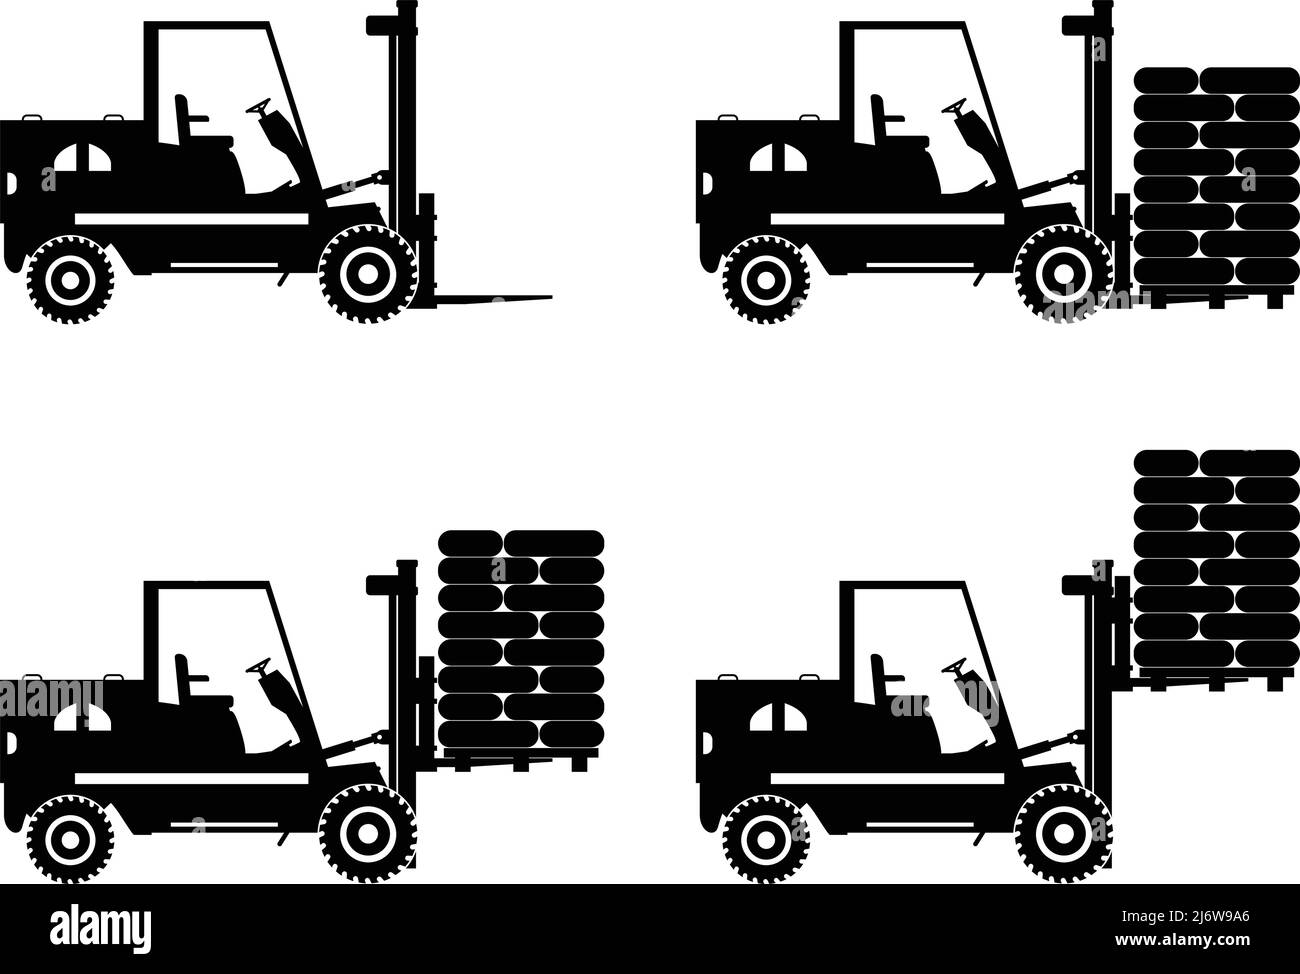 Illustrazione dettagliata di carrelli elevatori, attrezzature pesanti e macchinari Illustrazione Vettoriale